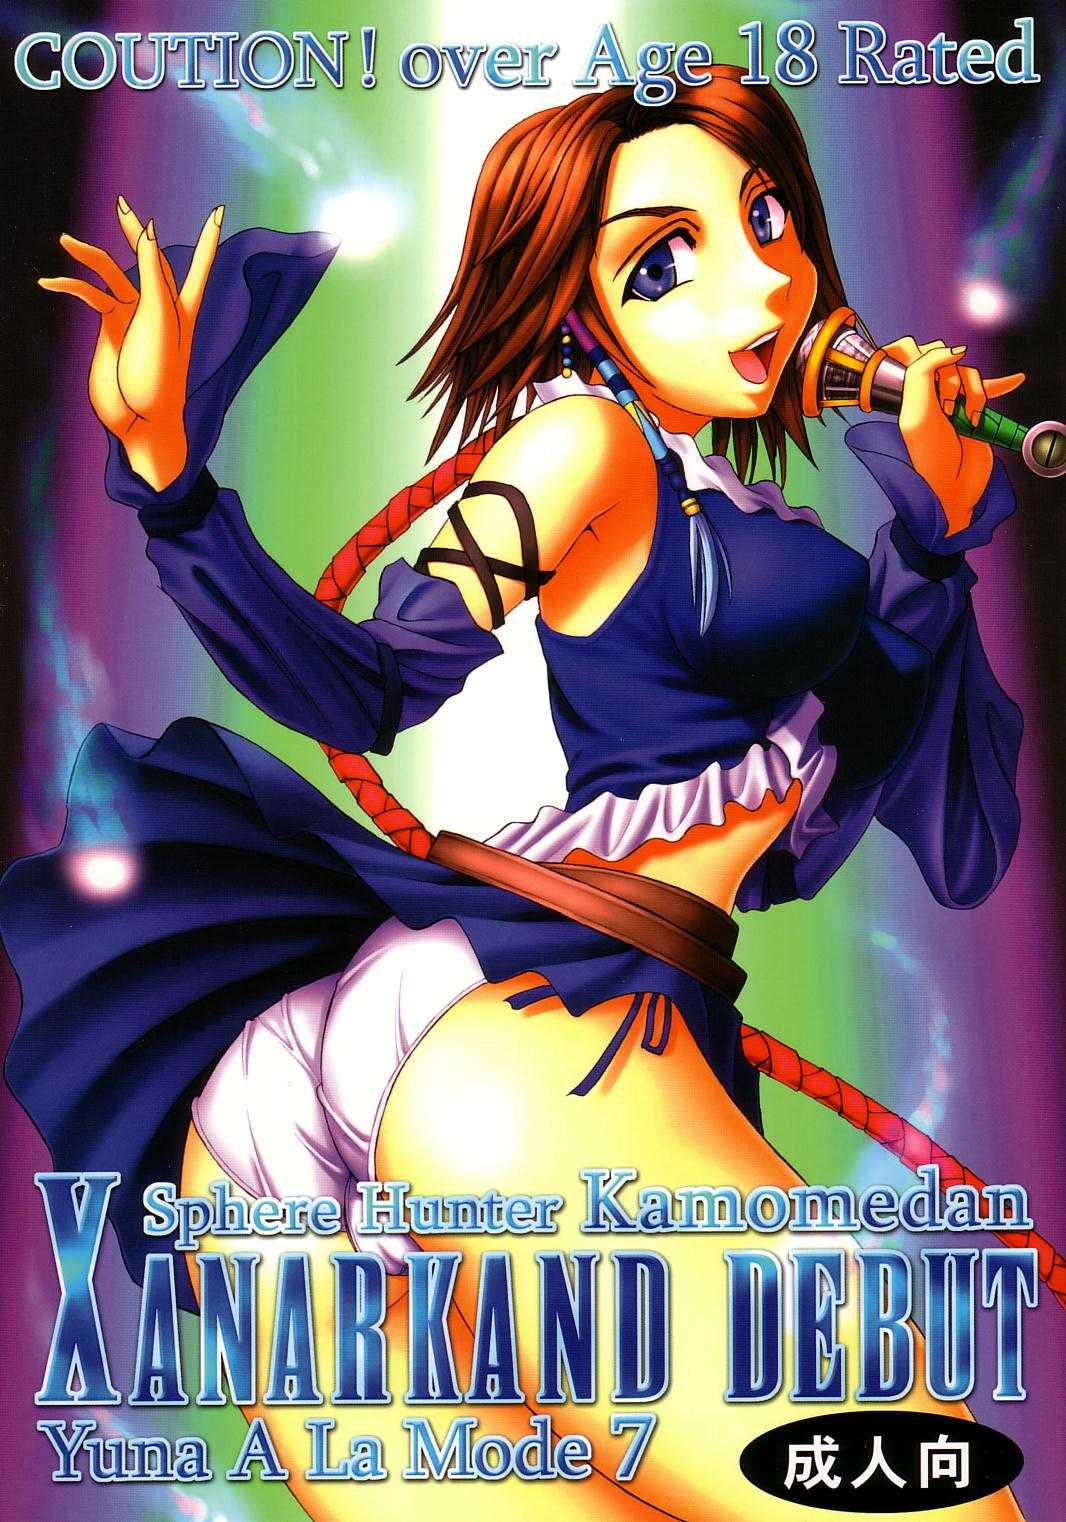 [St. Rio] Yuna A La Mode 07 (Final Fantasy 10-2) 